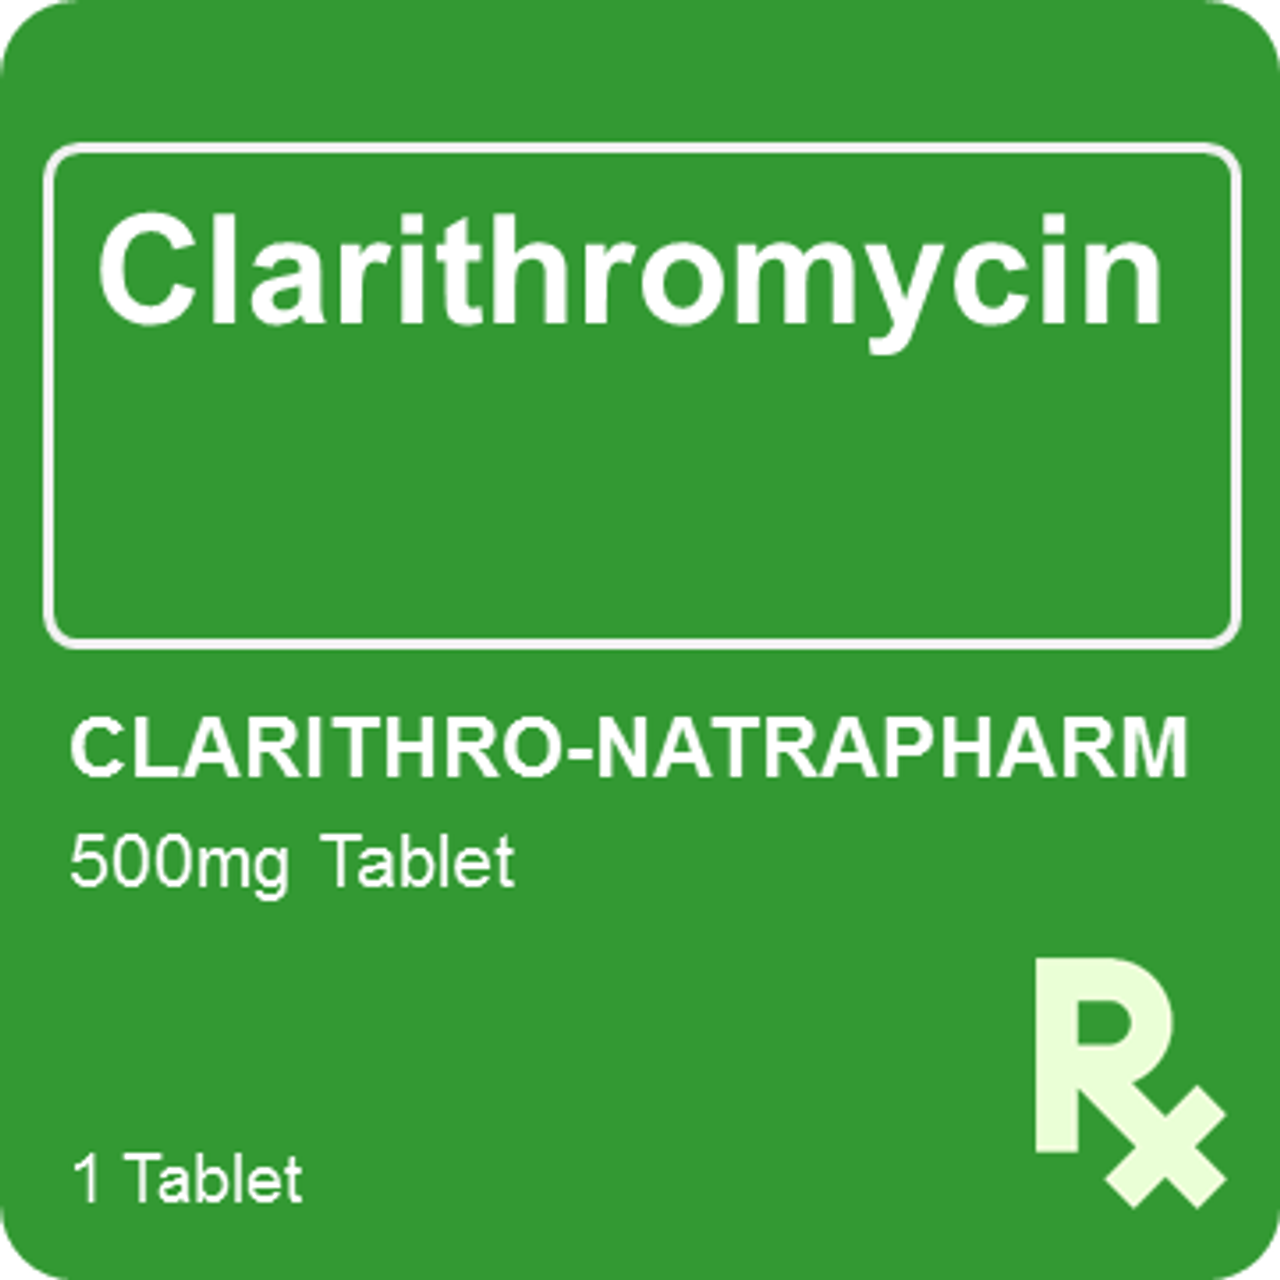 Clarithro-Natrapharm 500mg 1 Tablet - St. Joseph Drug - Online Store